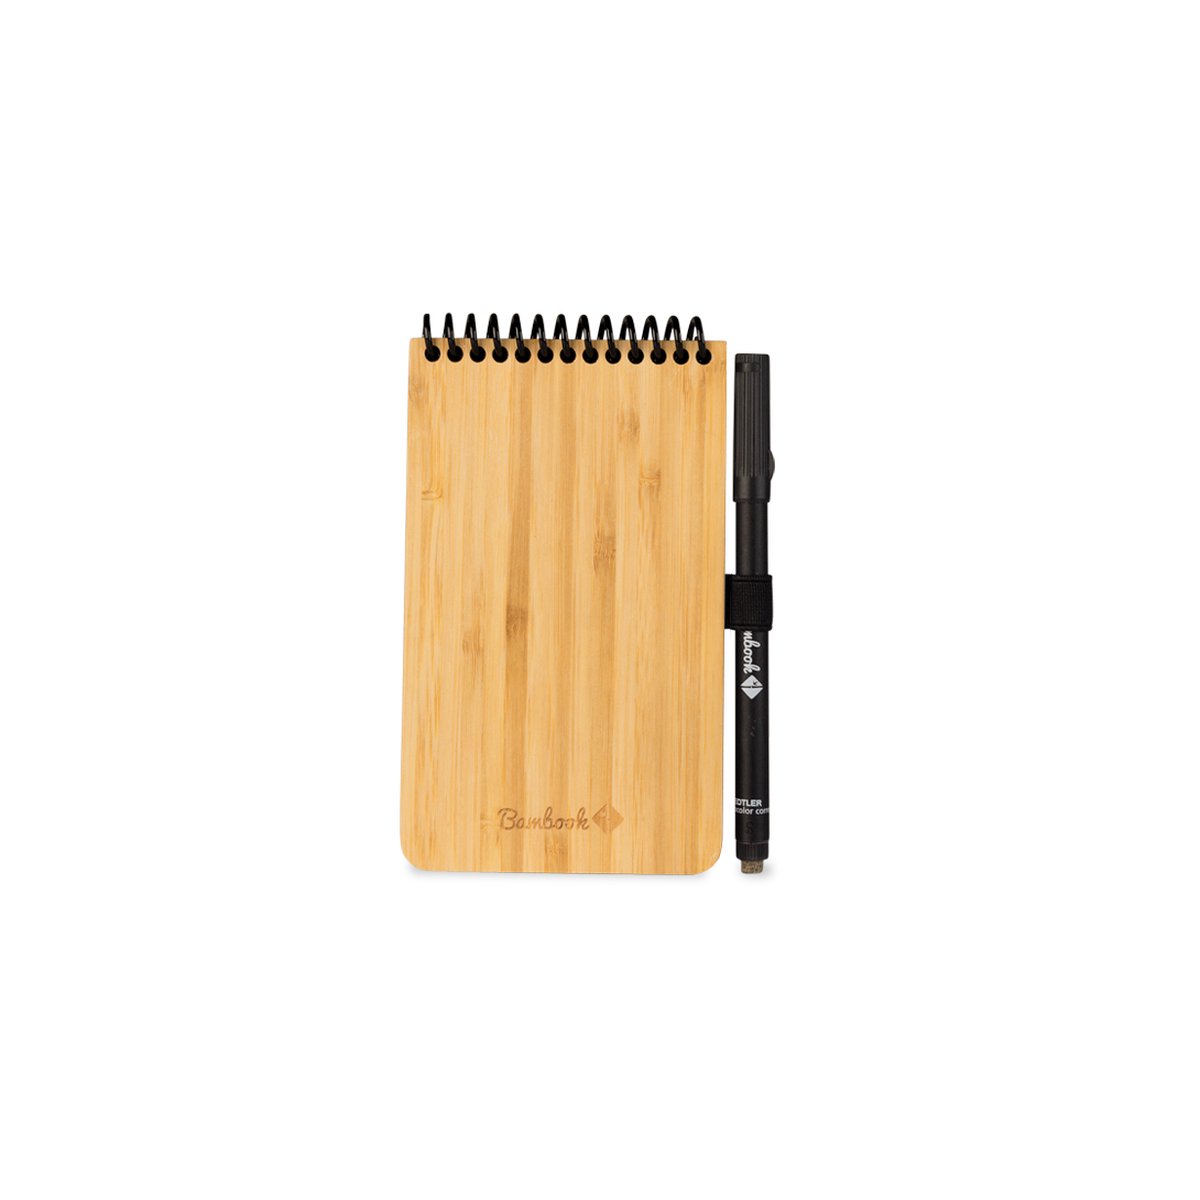 Bambook Pocket uitwisbaar notitieboek - Hardcover - Duurzaam, herbruikbaar whiteboard schrift - Met 1 gratis stift